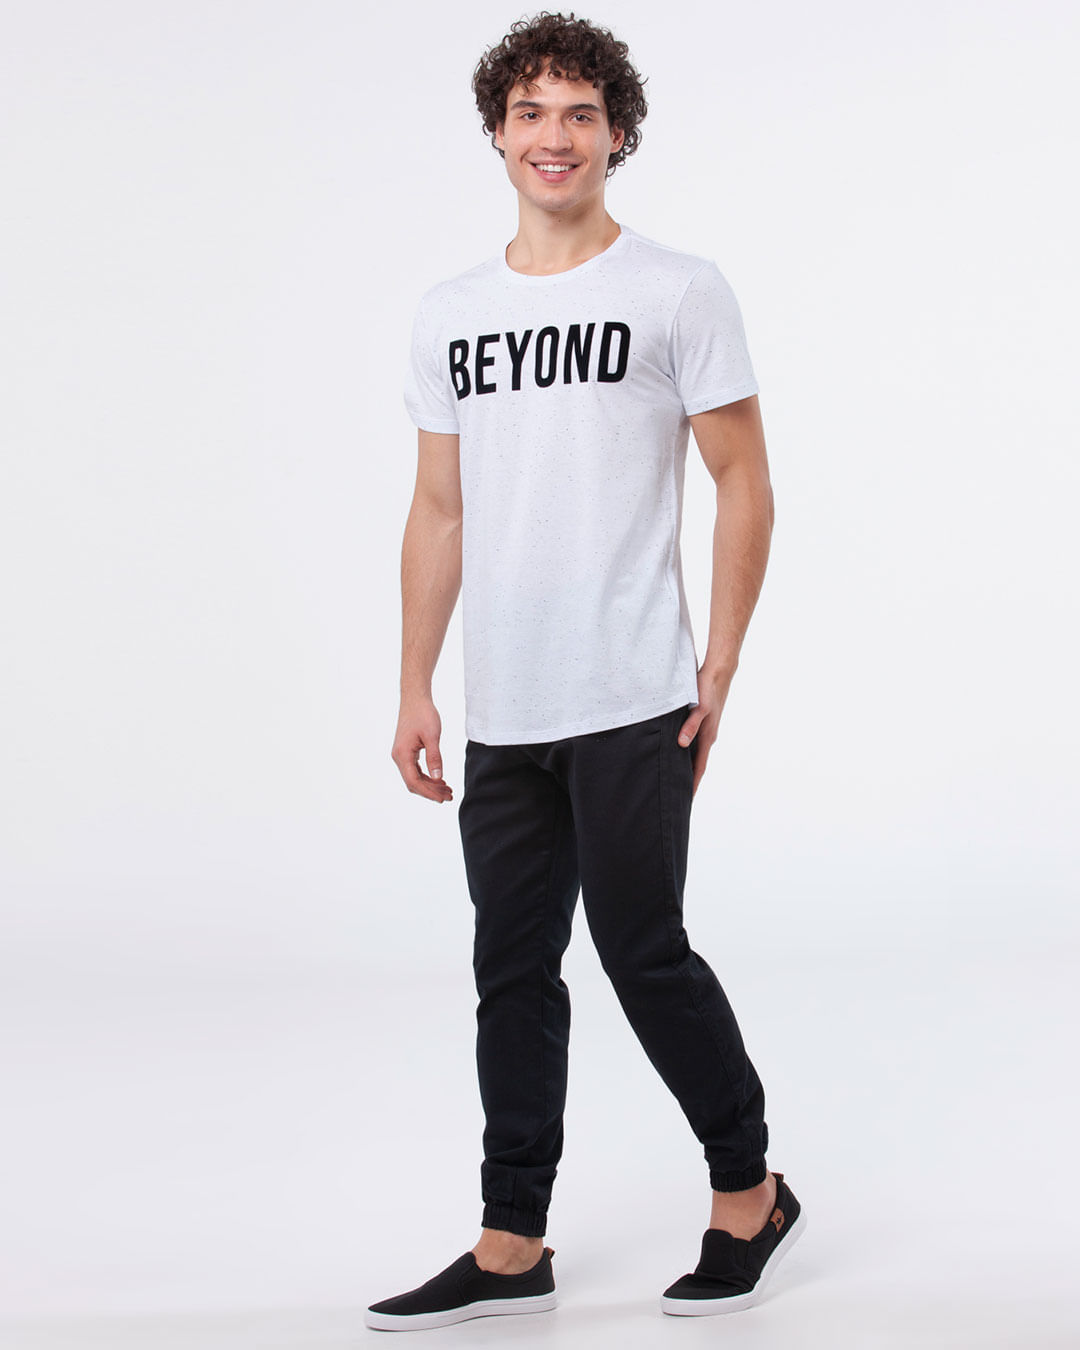 Camiseta-Masculina-Regular-Estampa-Beyond-Branco